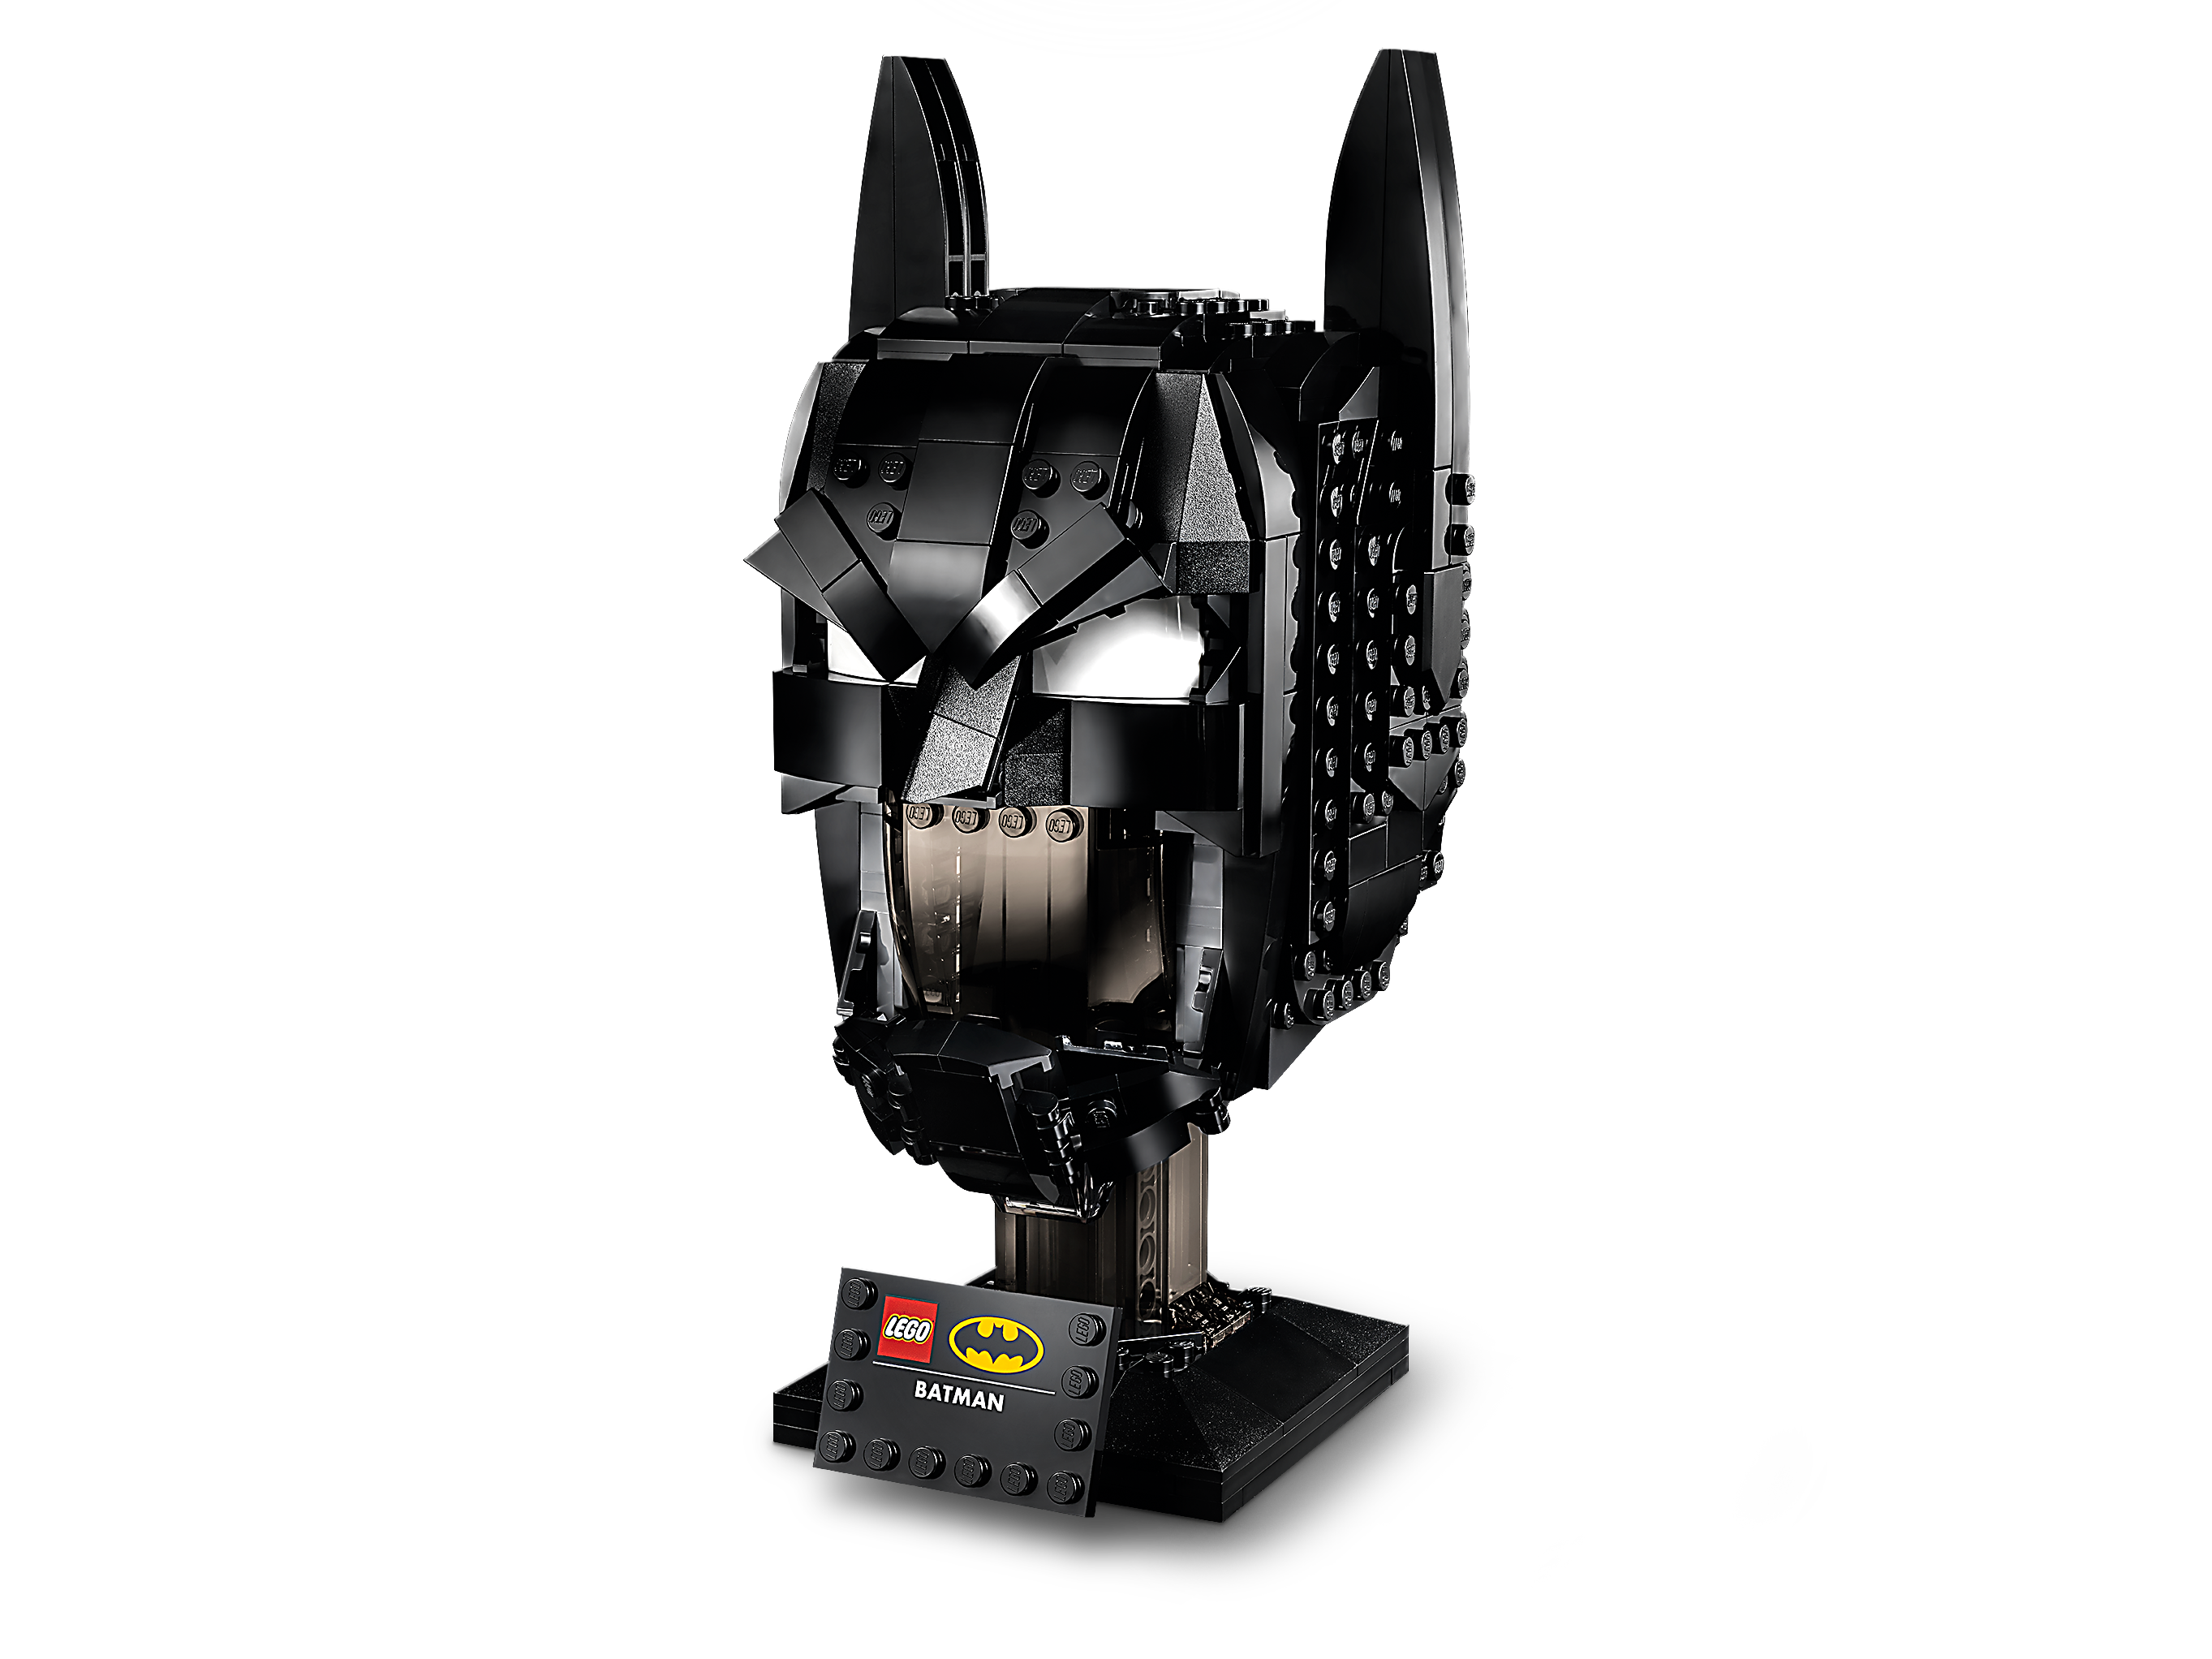 Batman™ Cowl 76182 | DC | online at the Official Shop